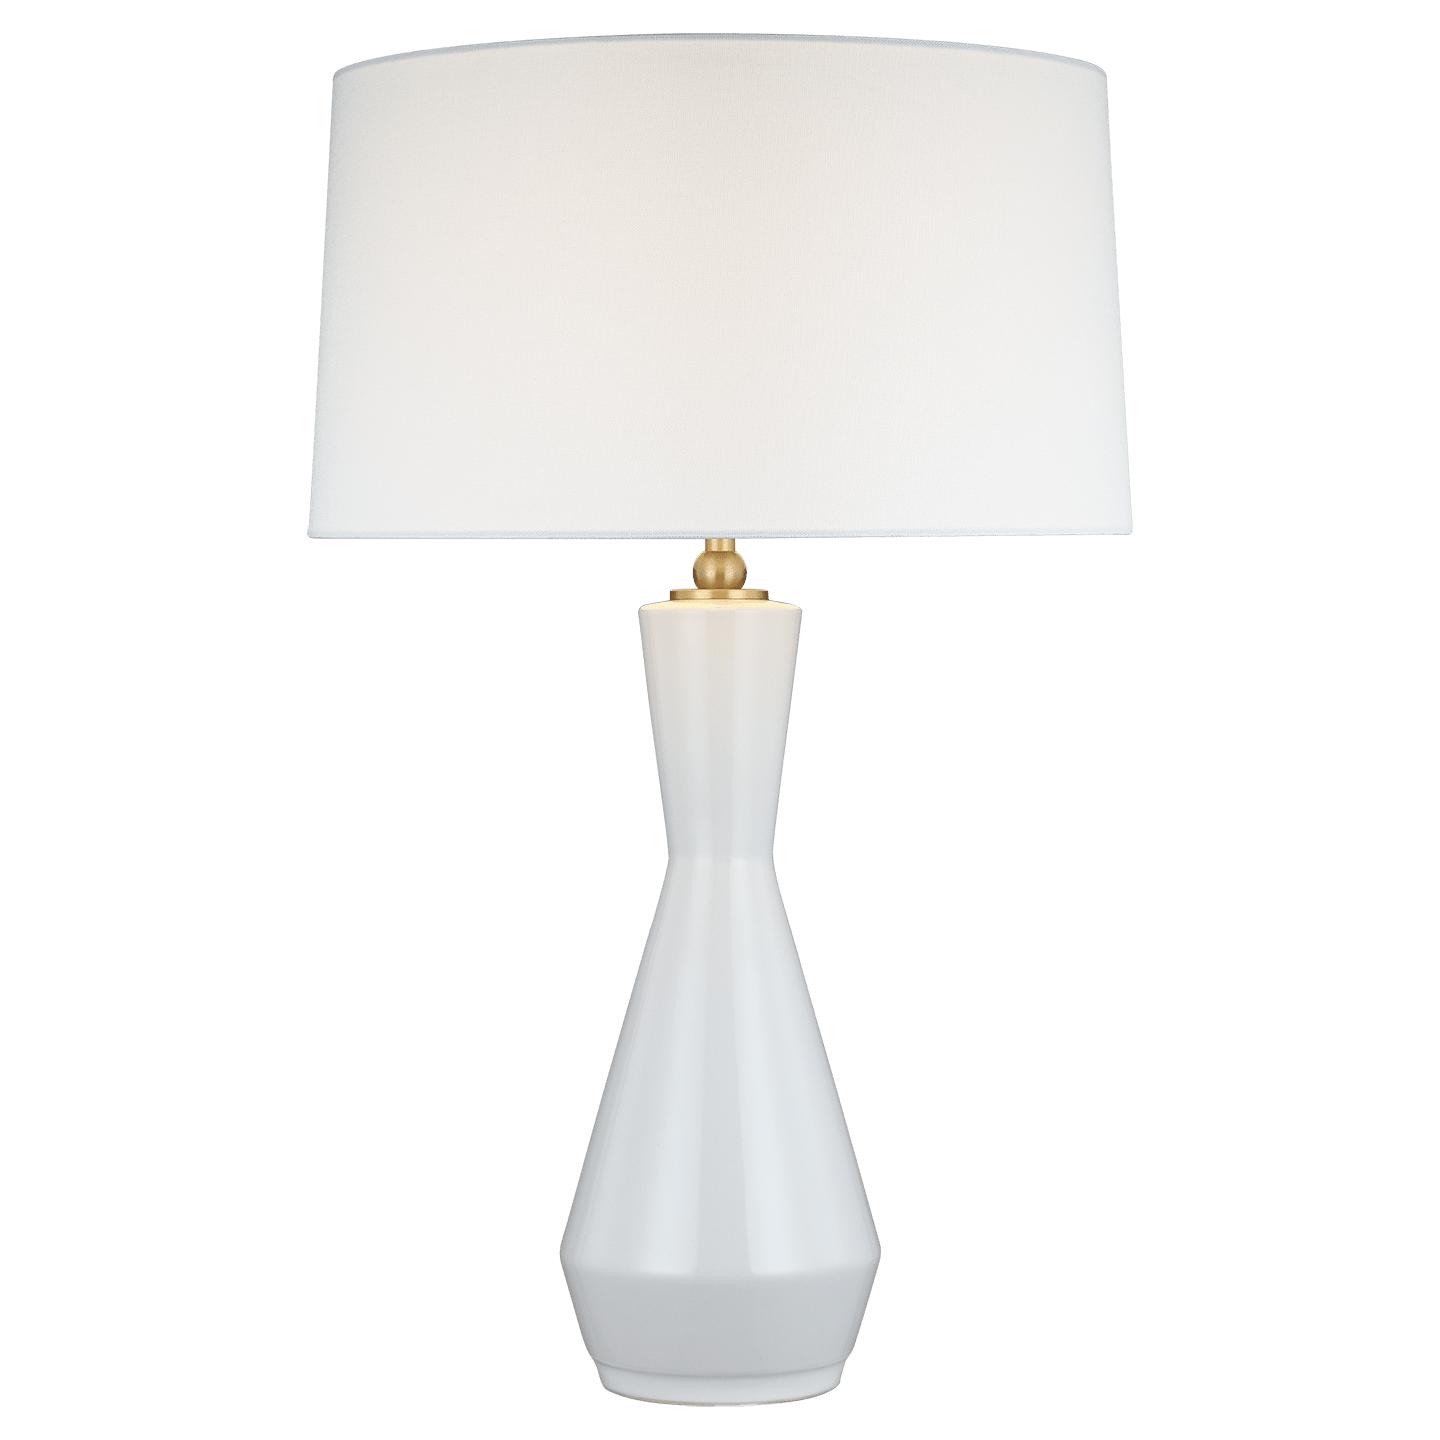 Купить Настольная лампа Jens Table Lamp в интернет-магазине roooms.ru